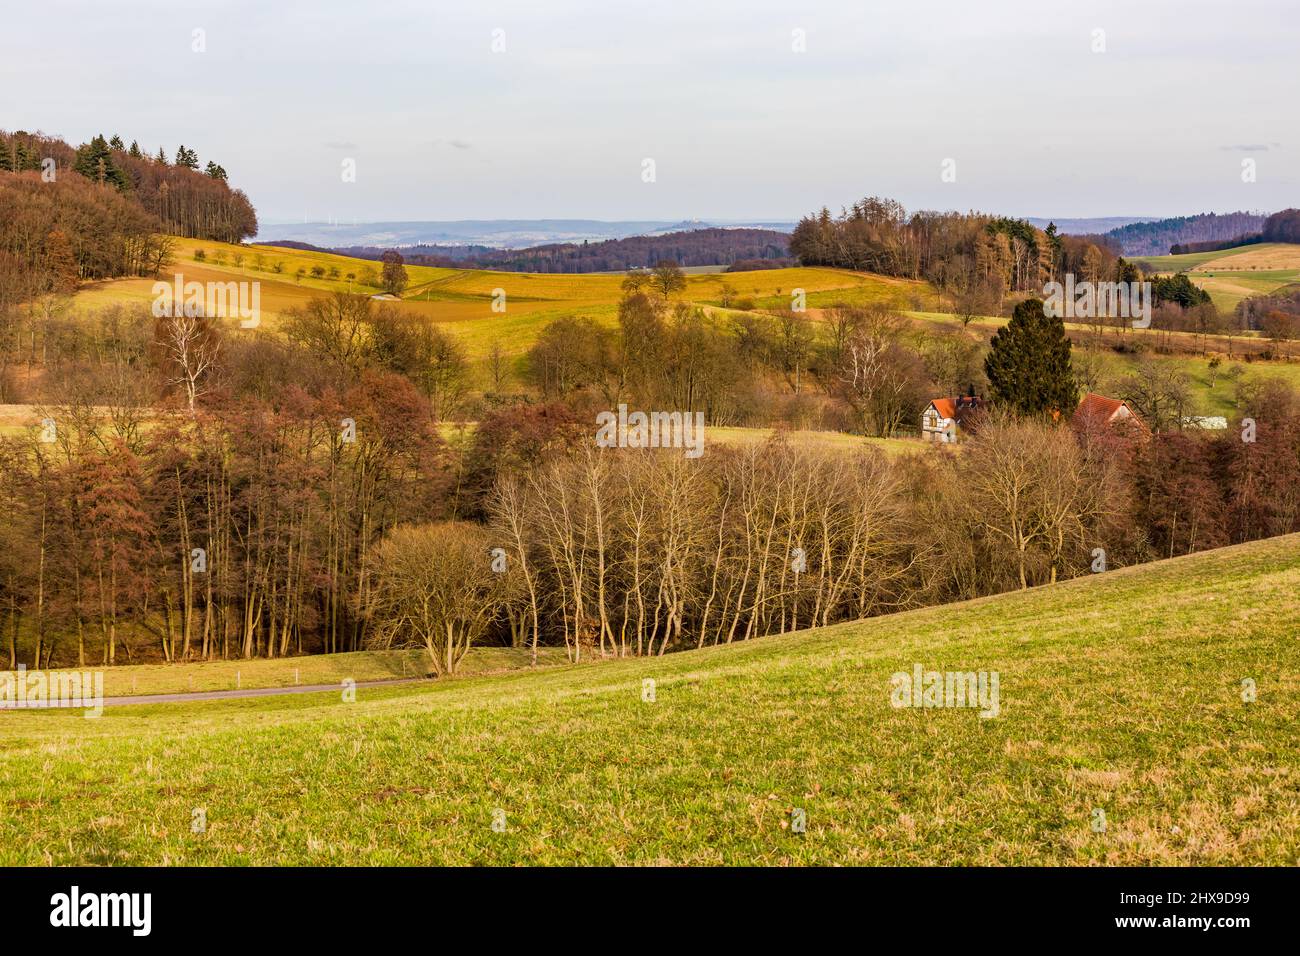 Scena rurale con colline, valli, alberi e cespugli con una bella vista a distanza Foto Stock